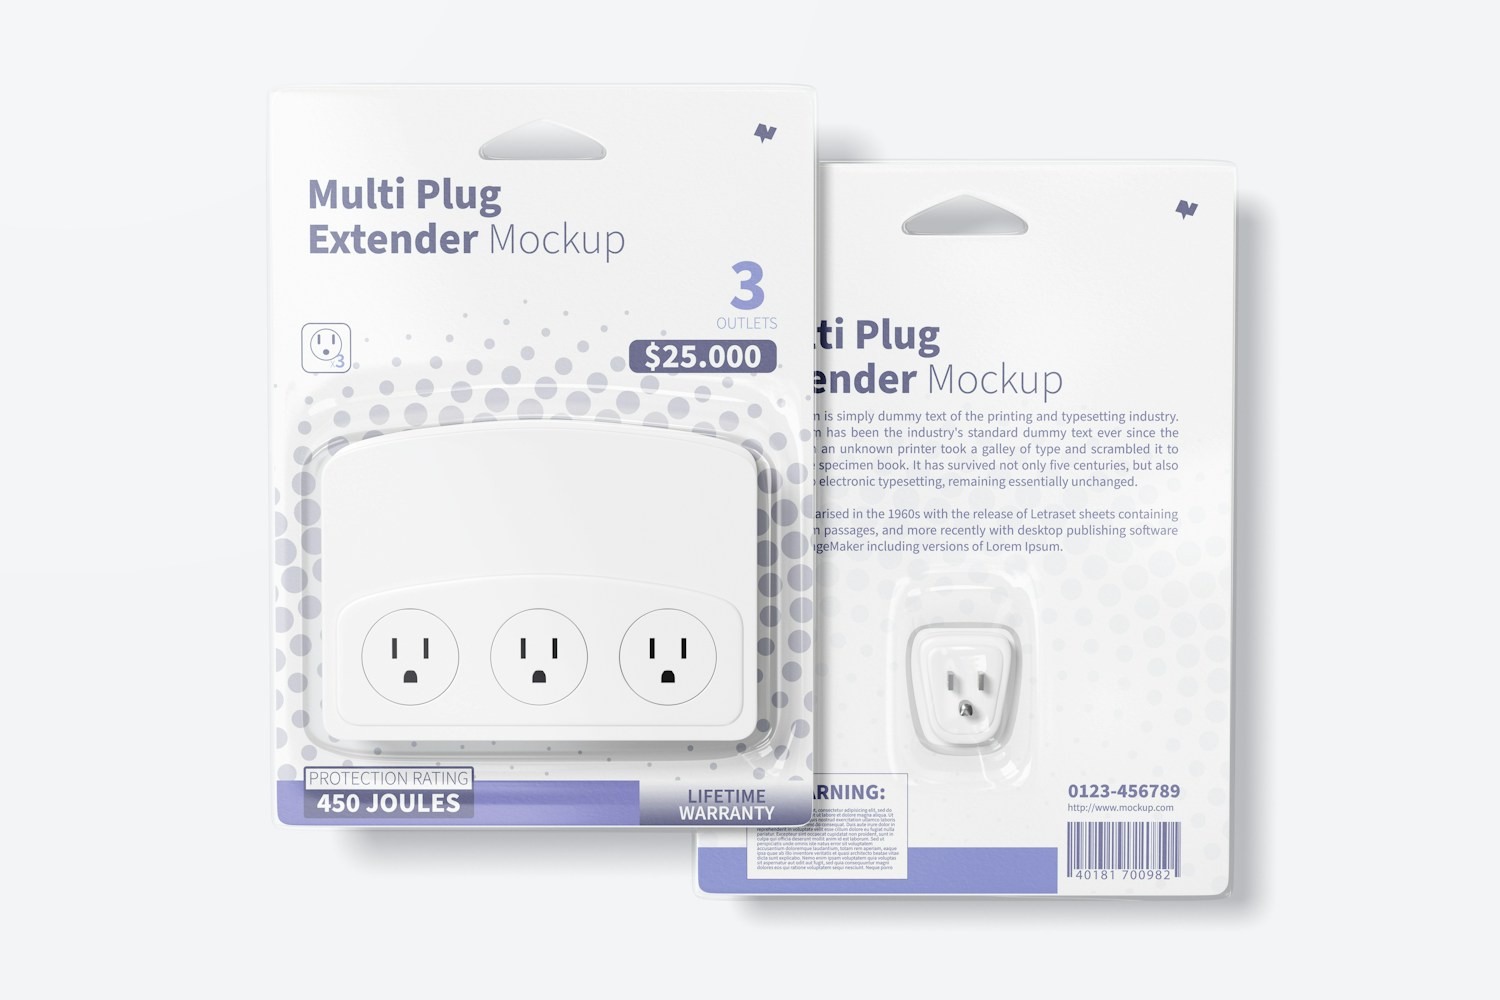 Multi Plug Extender Mockup